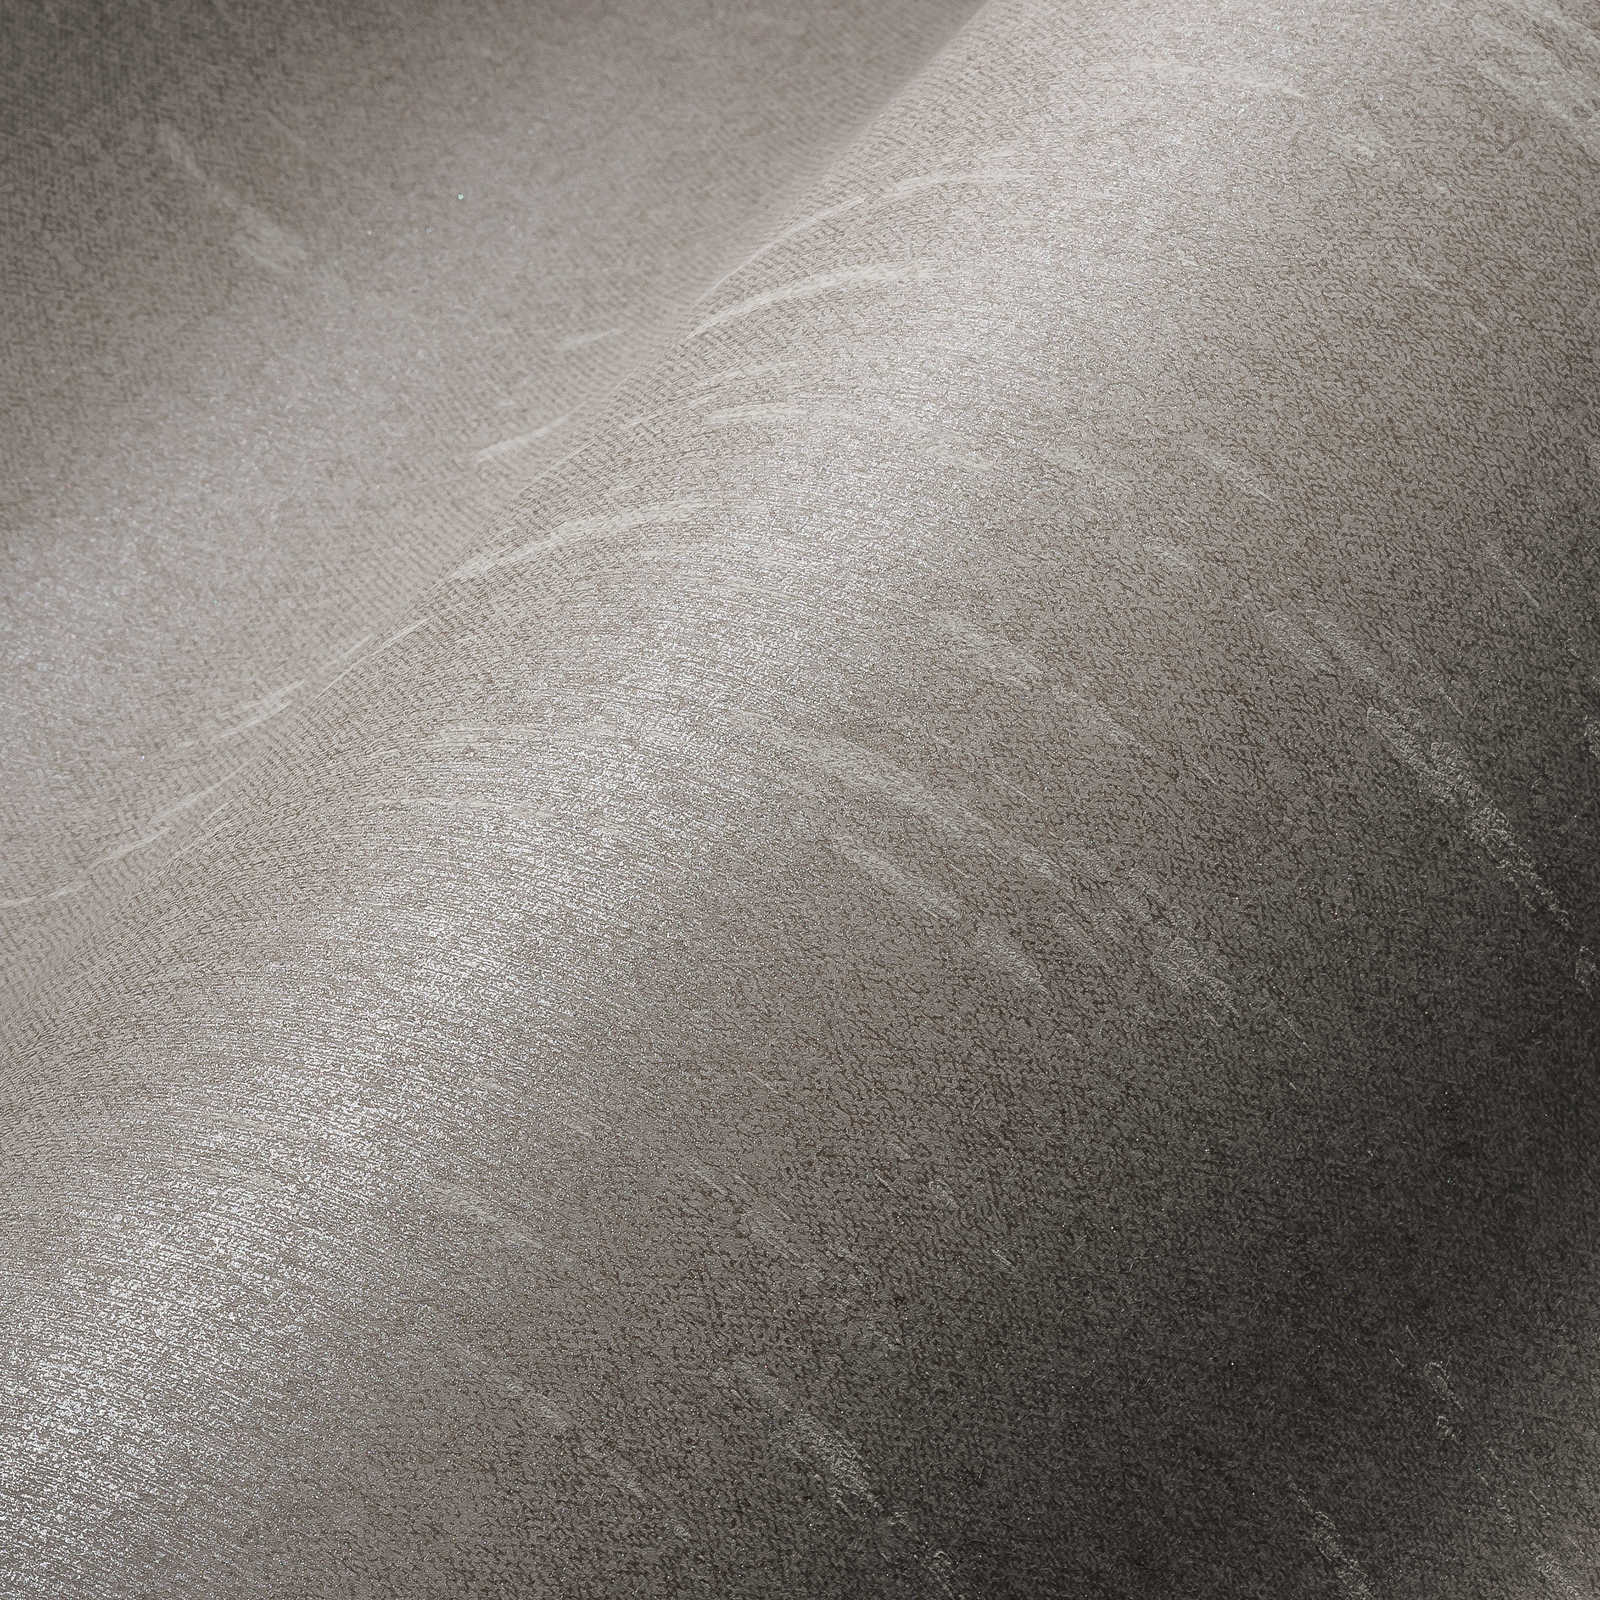             Carta da parati liscia grigio argento con effetto bouclé - grigio
        